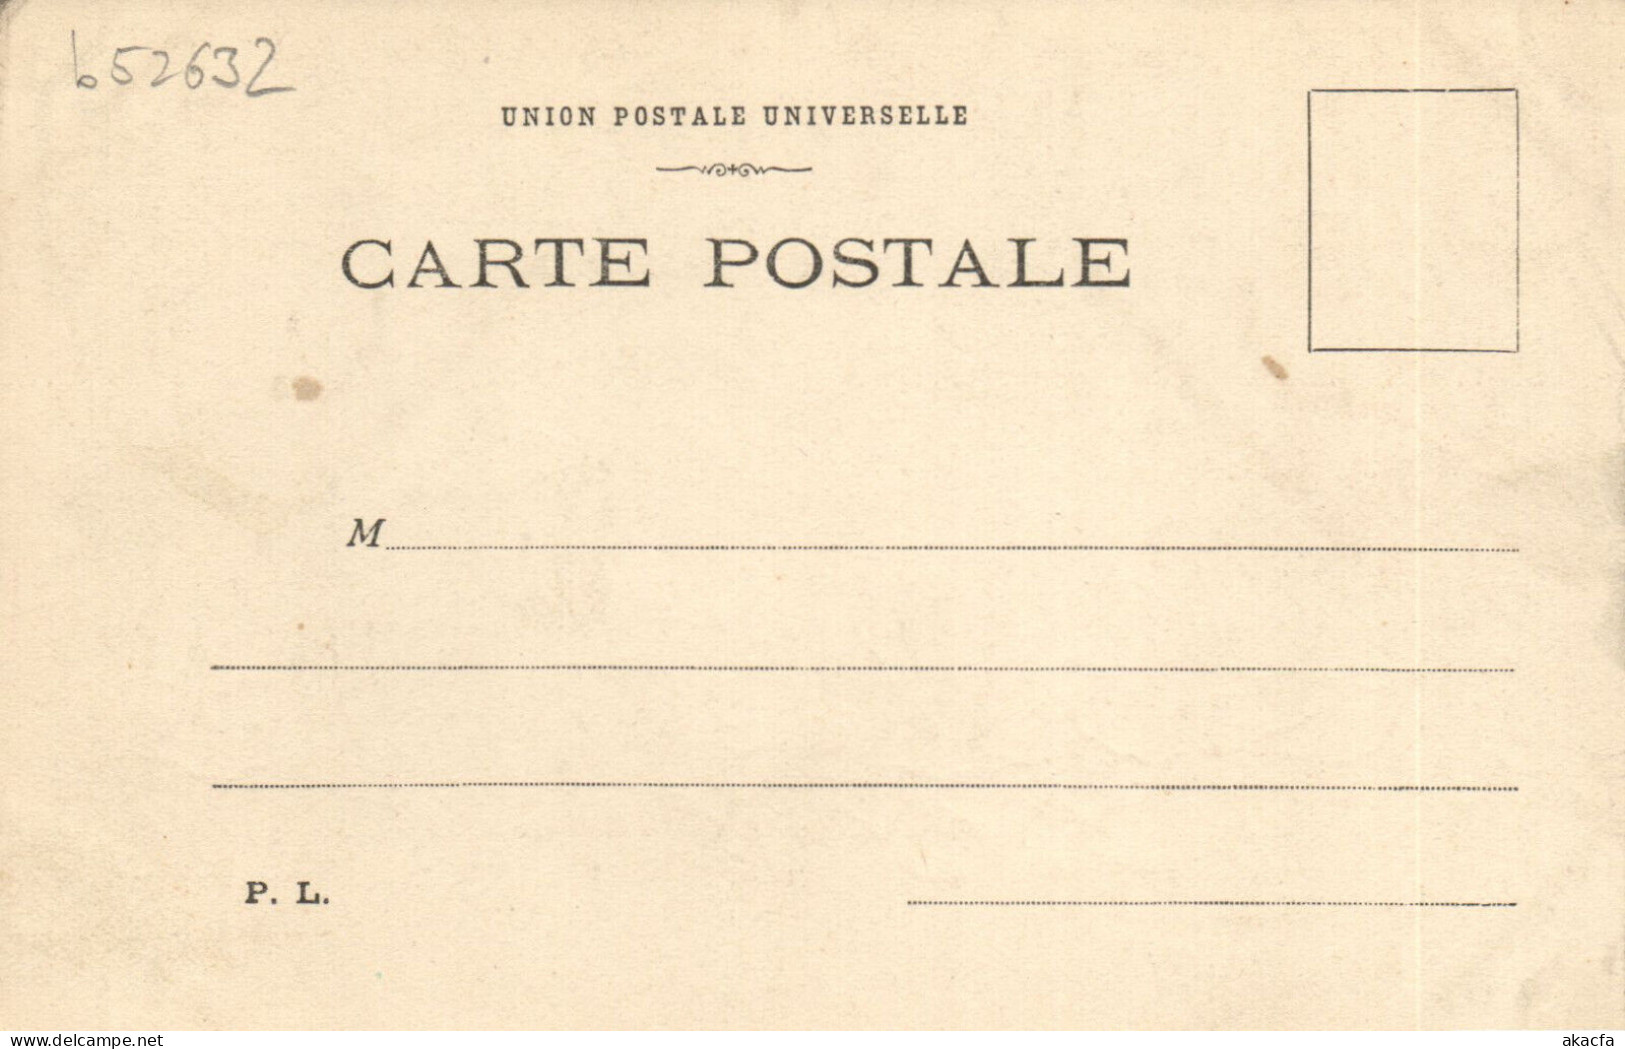 PC ARTIST SIGNED, LION, BONNE SANTÉ, Vintage Postcard (b52632) - Lion